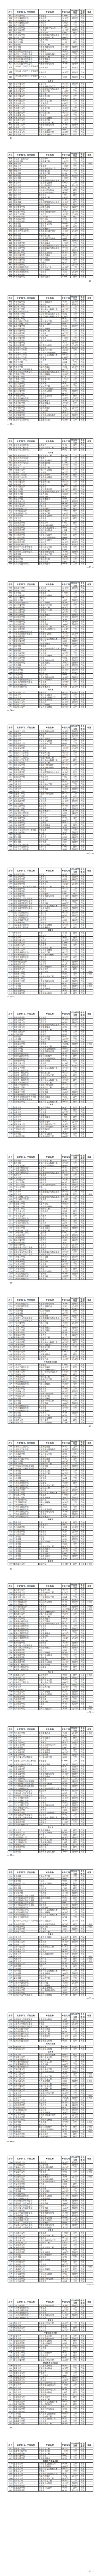 江西高校本科专业新增46个、撤销74个